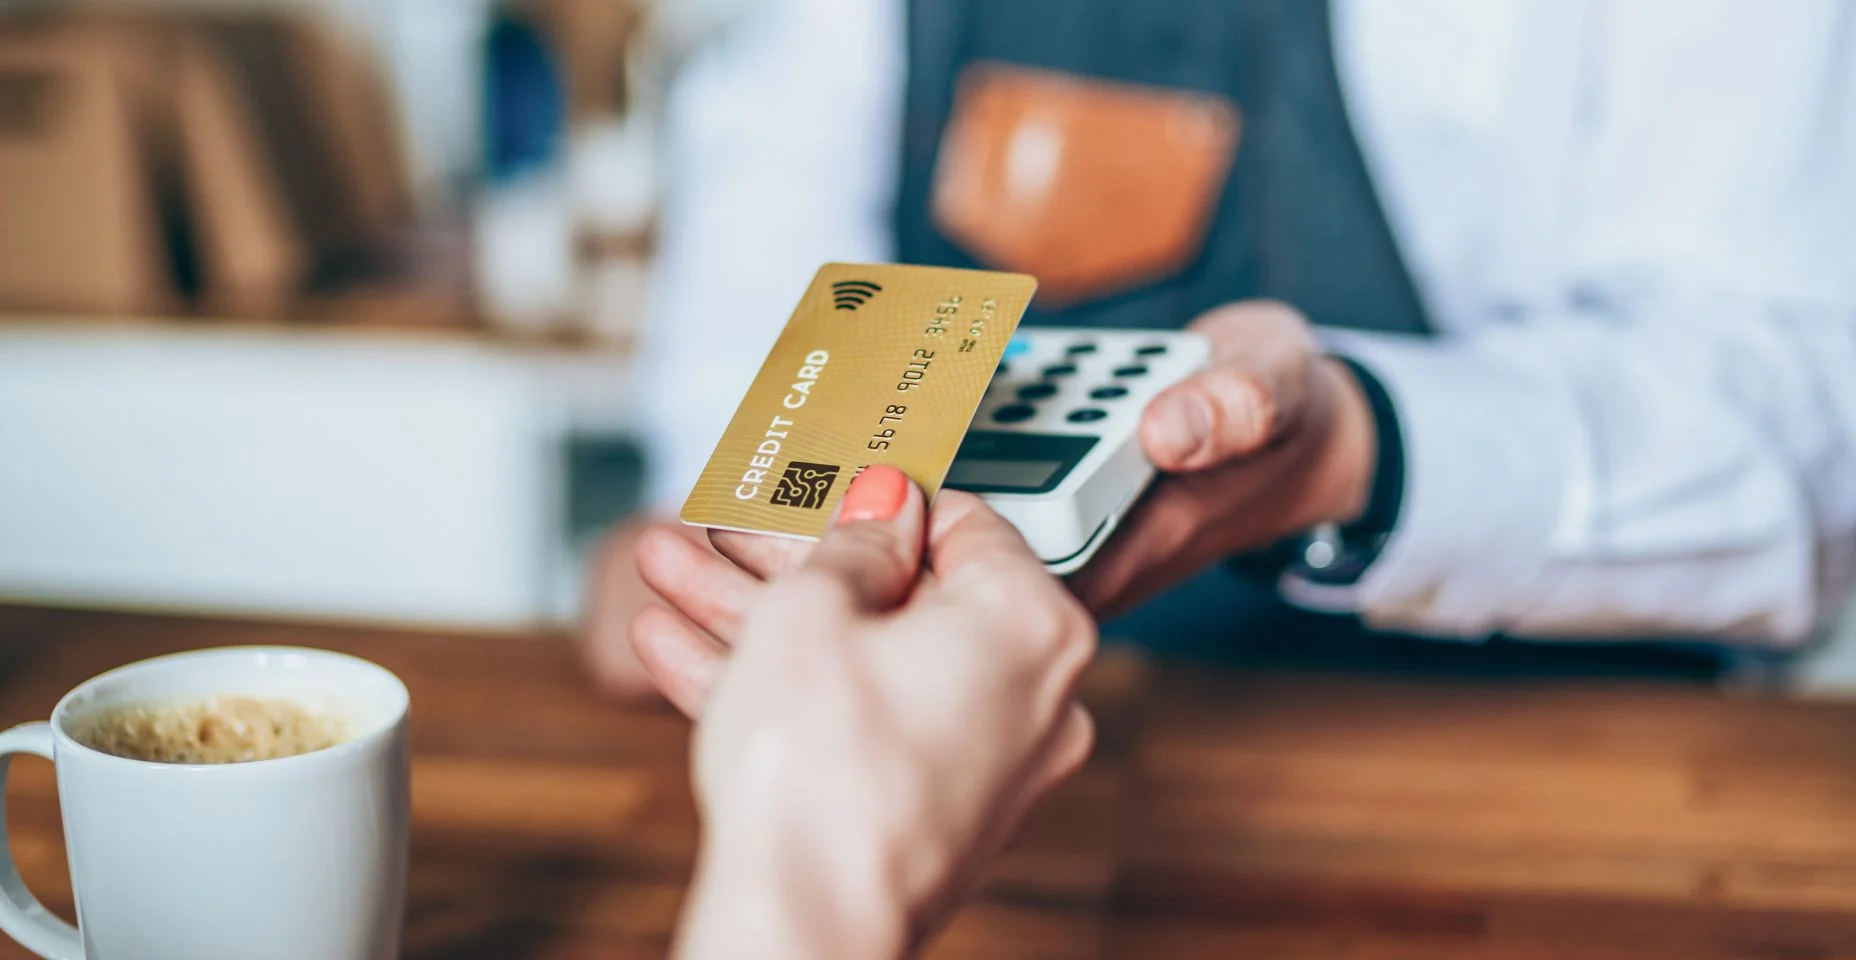 Pagamento sem contato usando um cartão de crédito